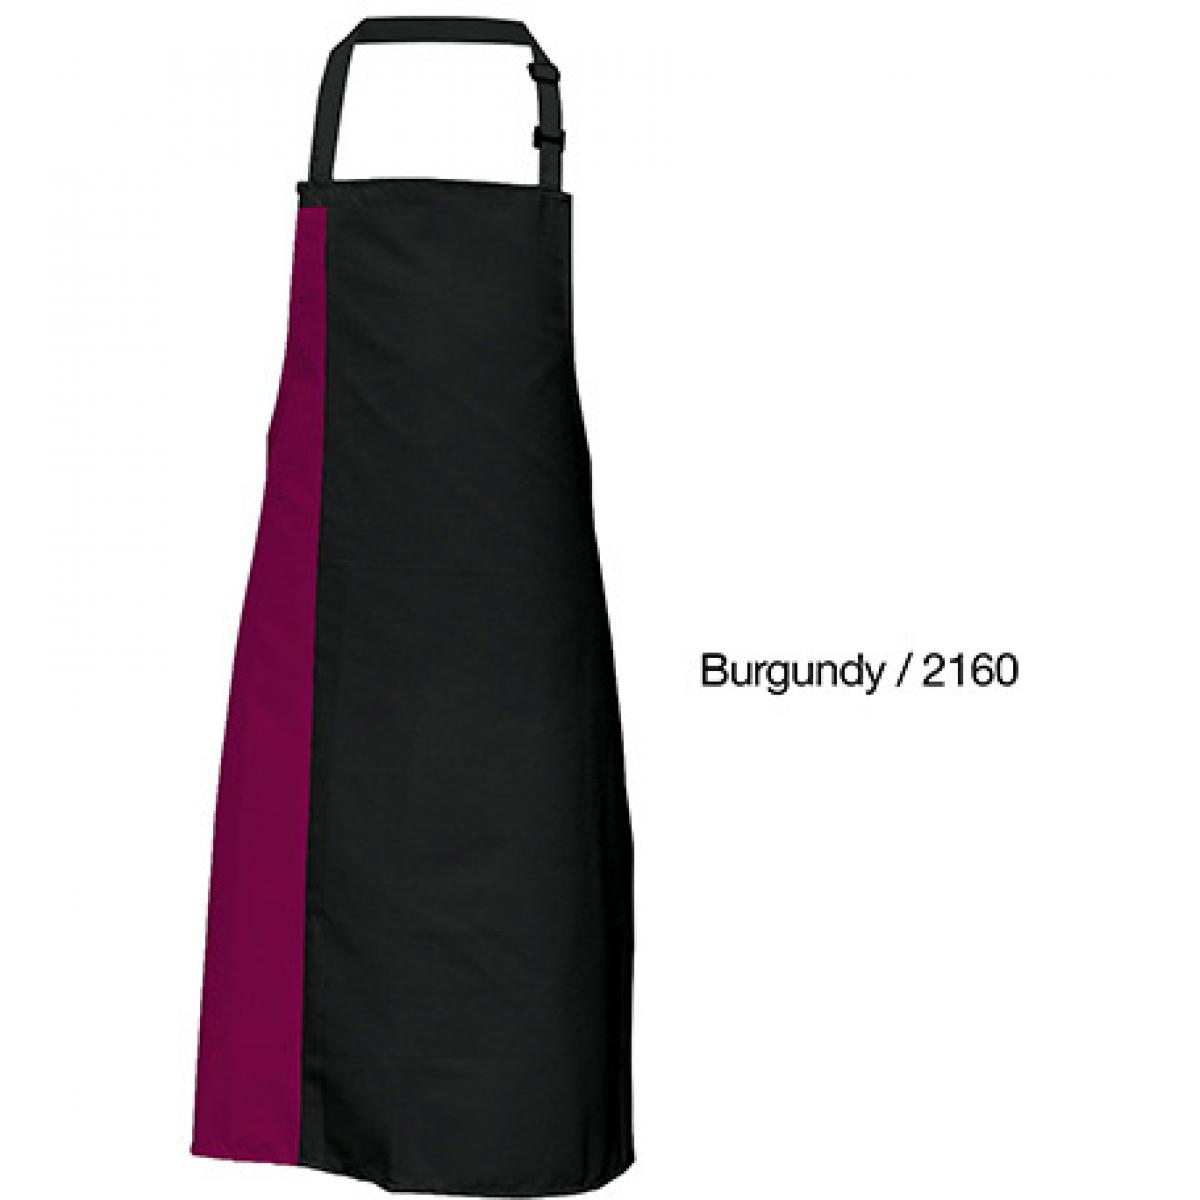 Hersteller: Link Kitchen Wear Herstellernummer: DS8572 Artikelbezeichnung: Duo Apron - 72 x 85 cm - Waschbar bis 60 °C Farbe: Black/Burgundy (ca. Pantone 216)